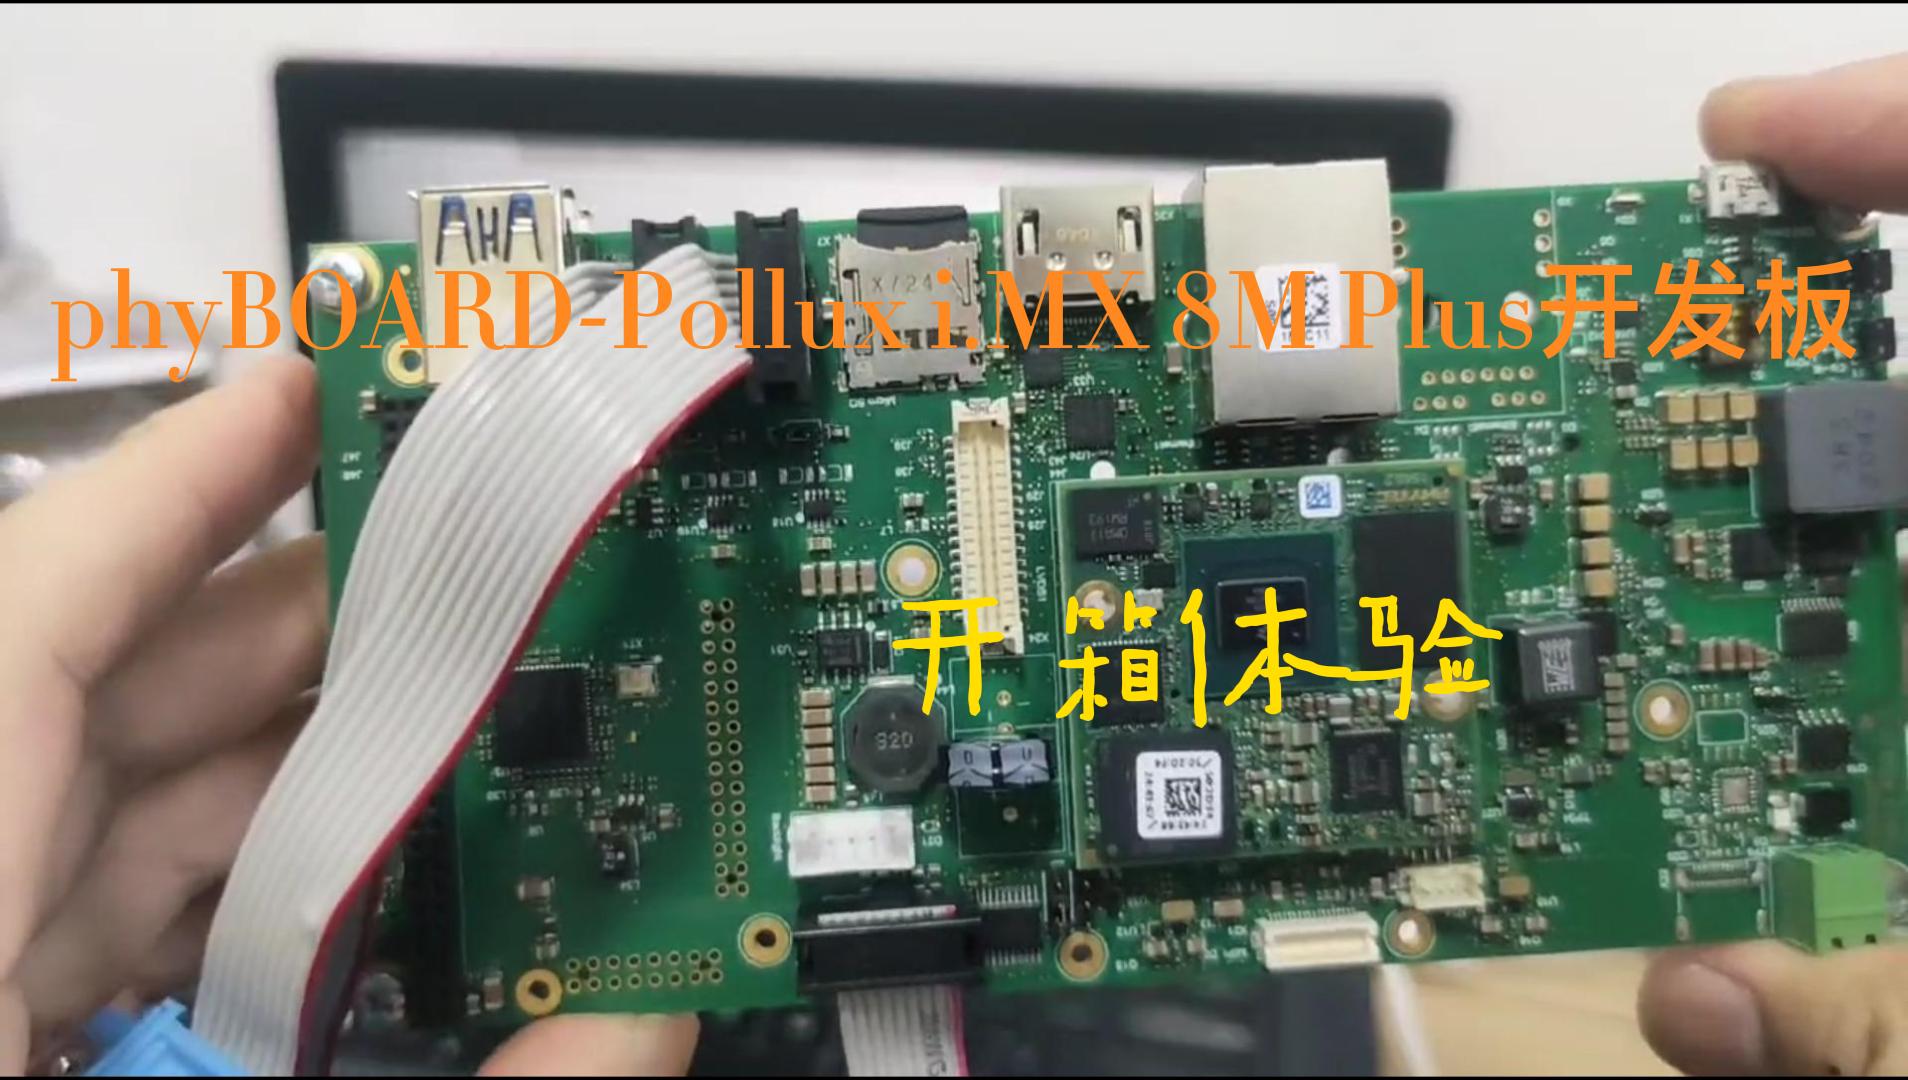 PHYTEC phyBOARD-Pollux i.MX 8M Plus开发板开箱与上电初体验